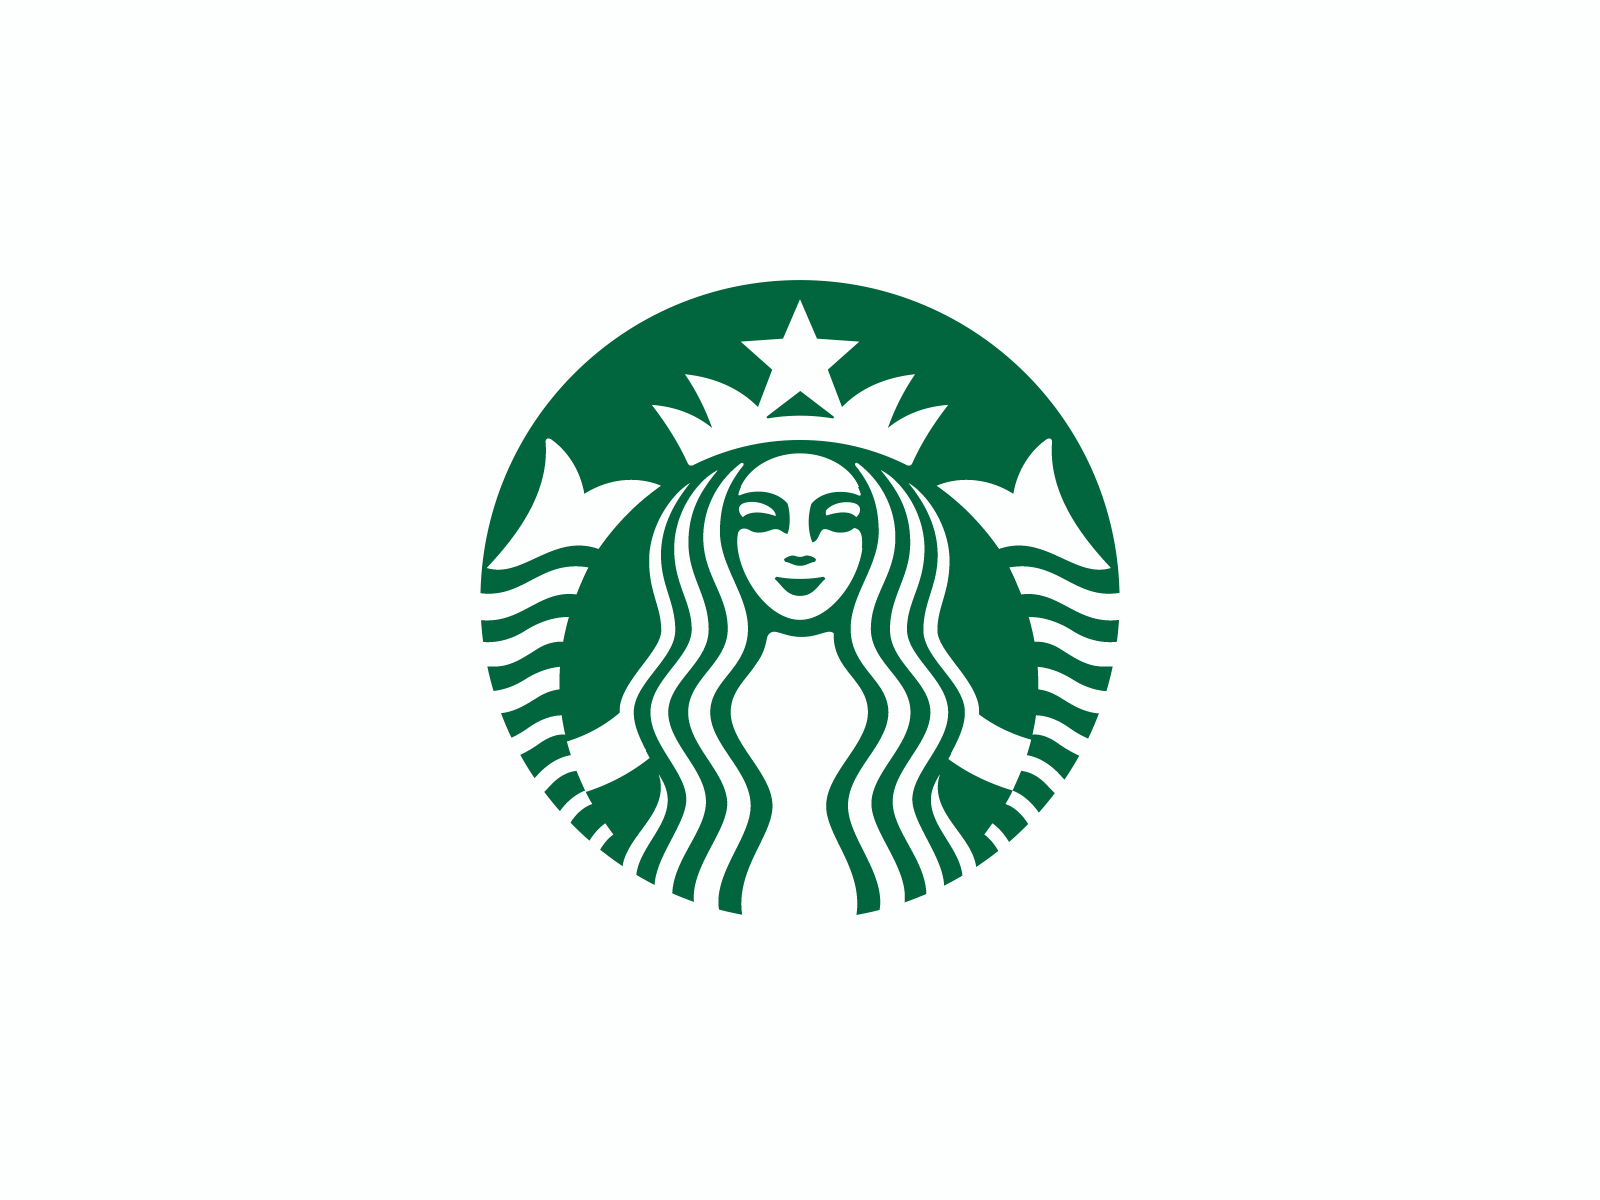 Starbucks logo animation by Alexandra Novozhilova on Dribbble